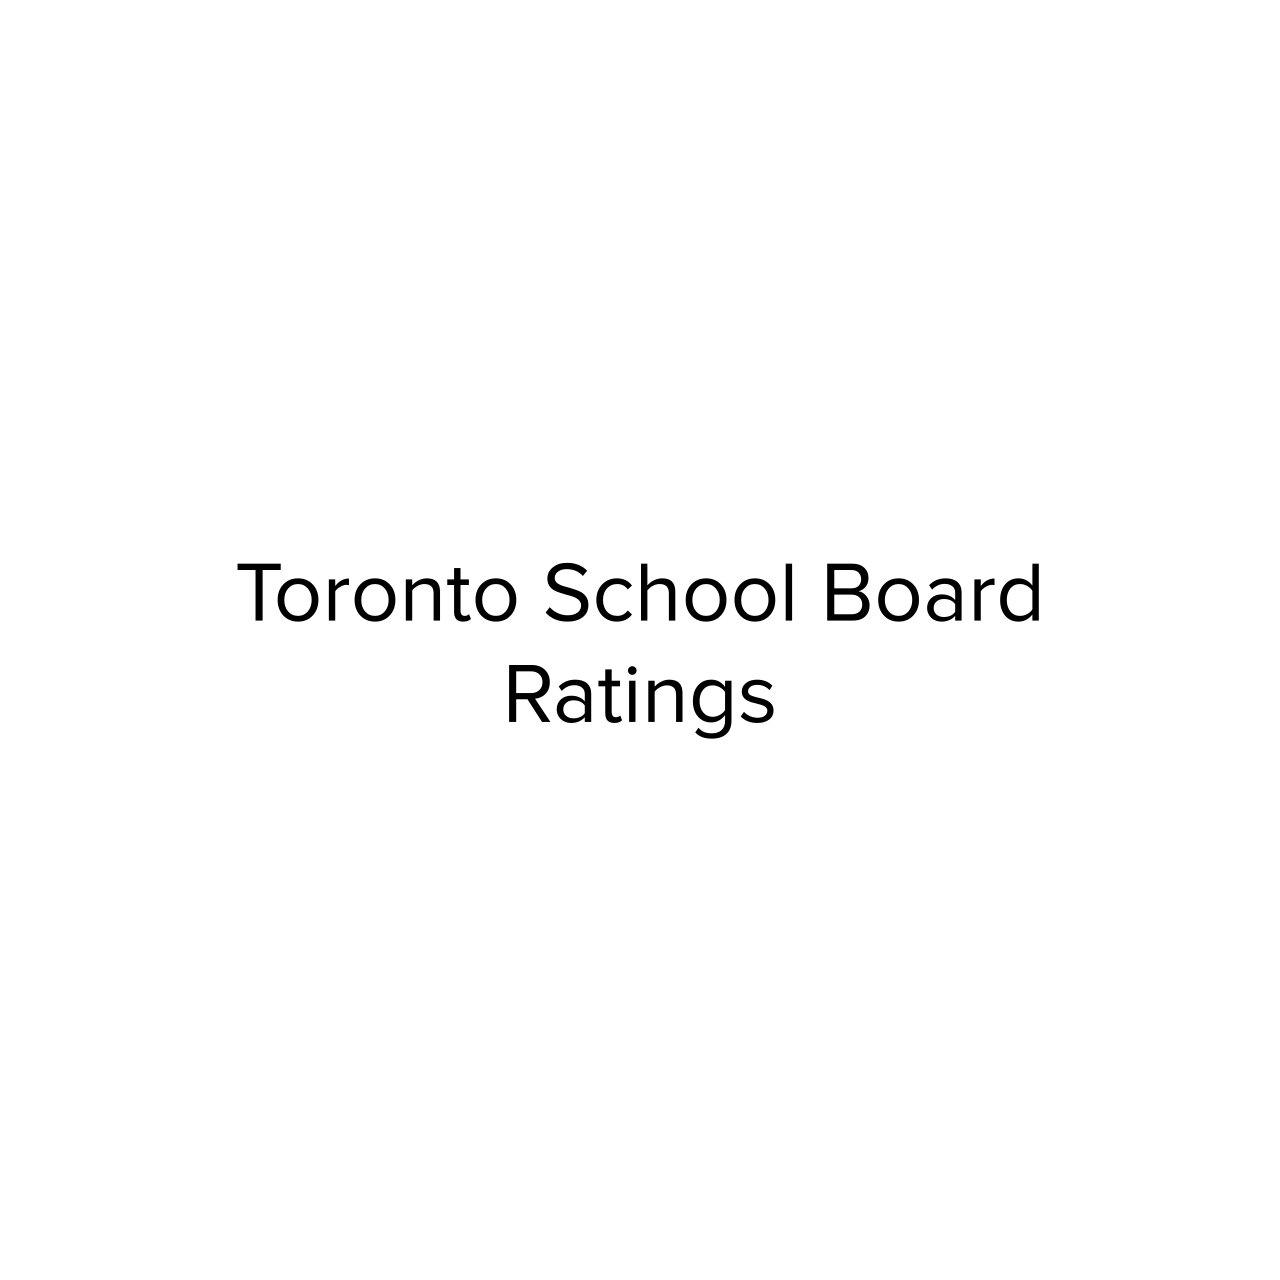 Toronto School Board Ratings.jpg